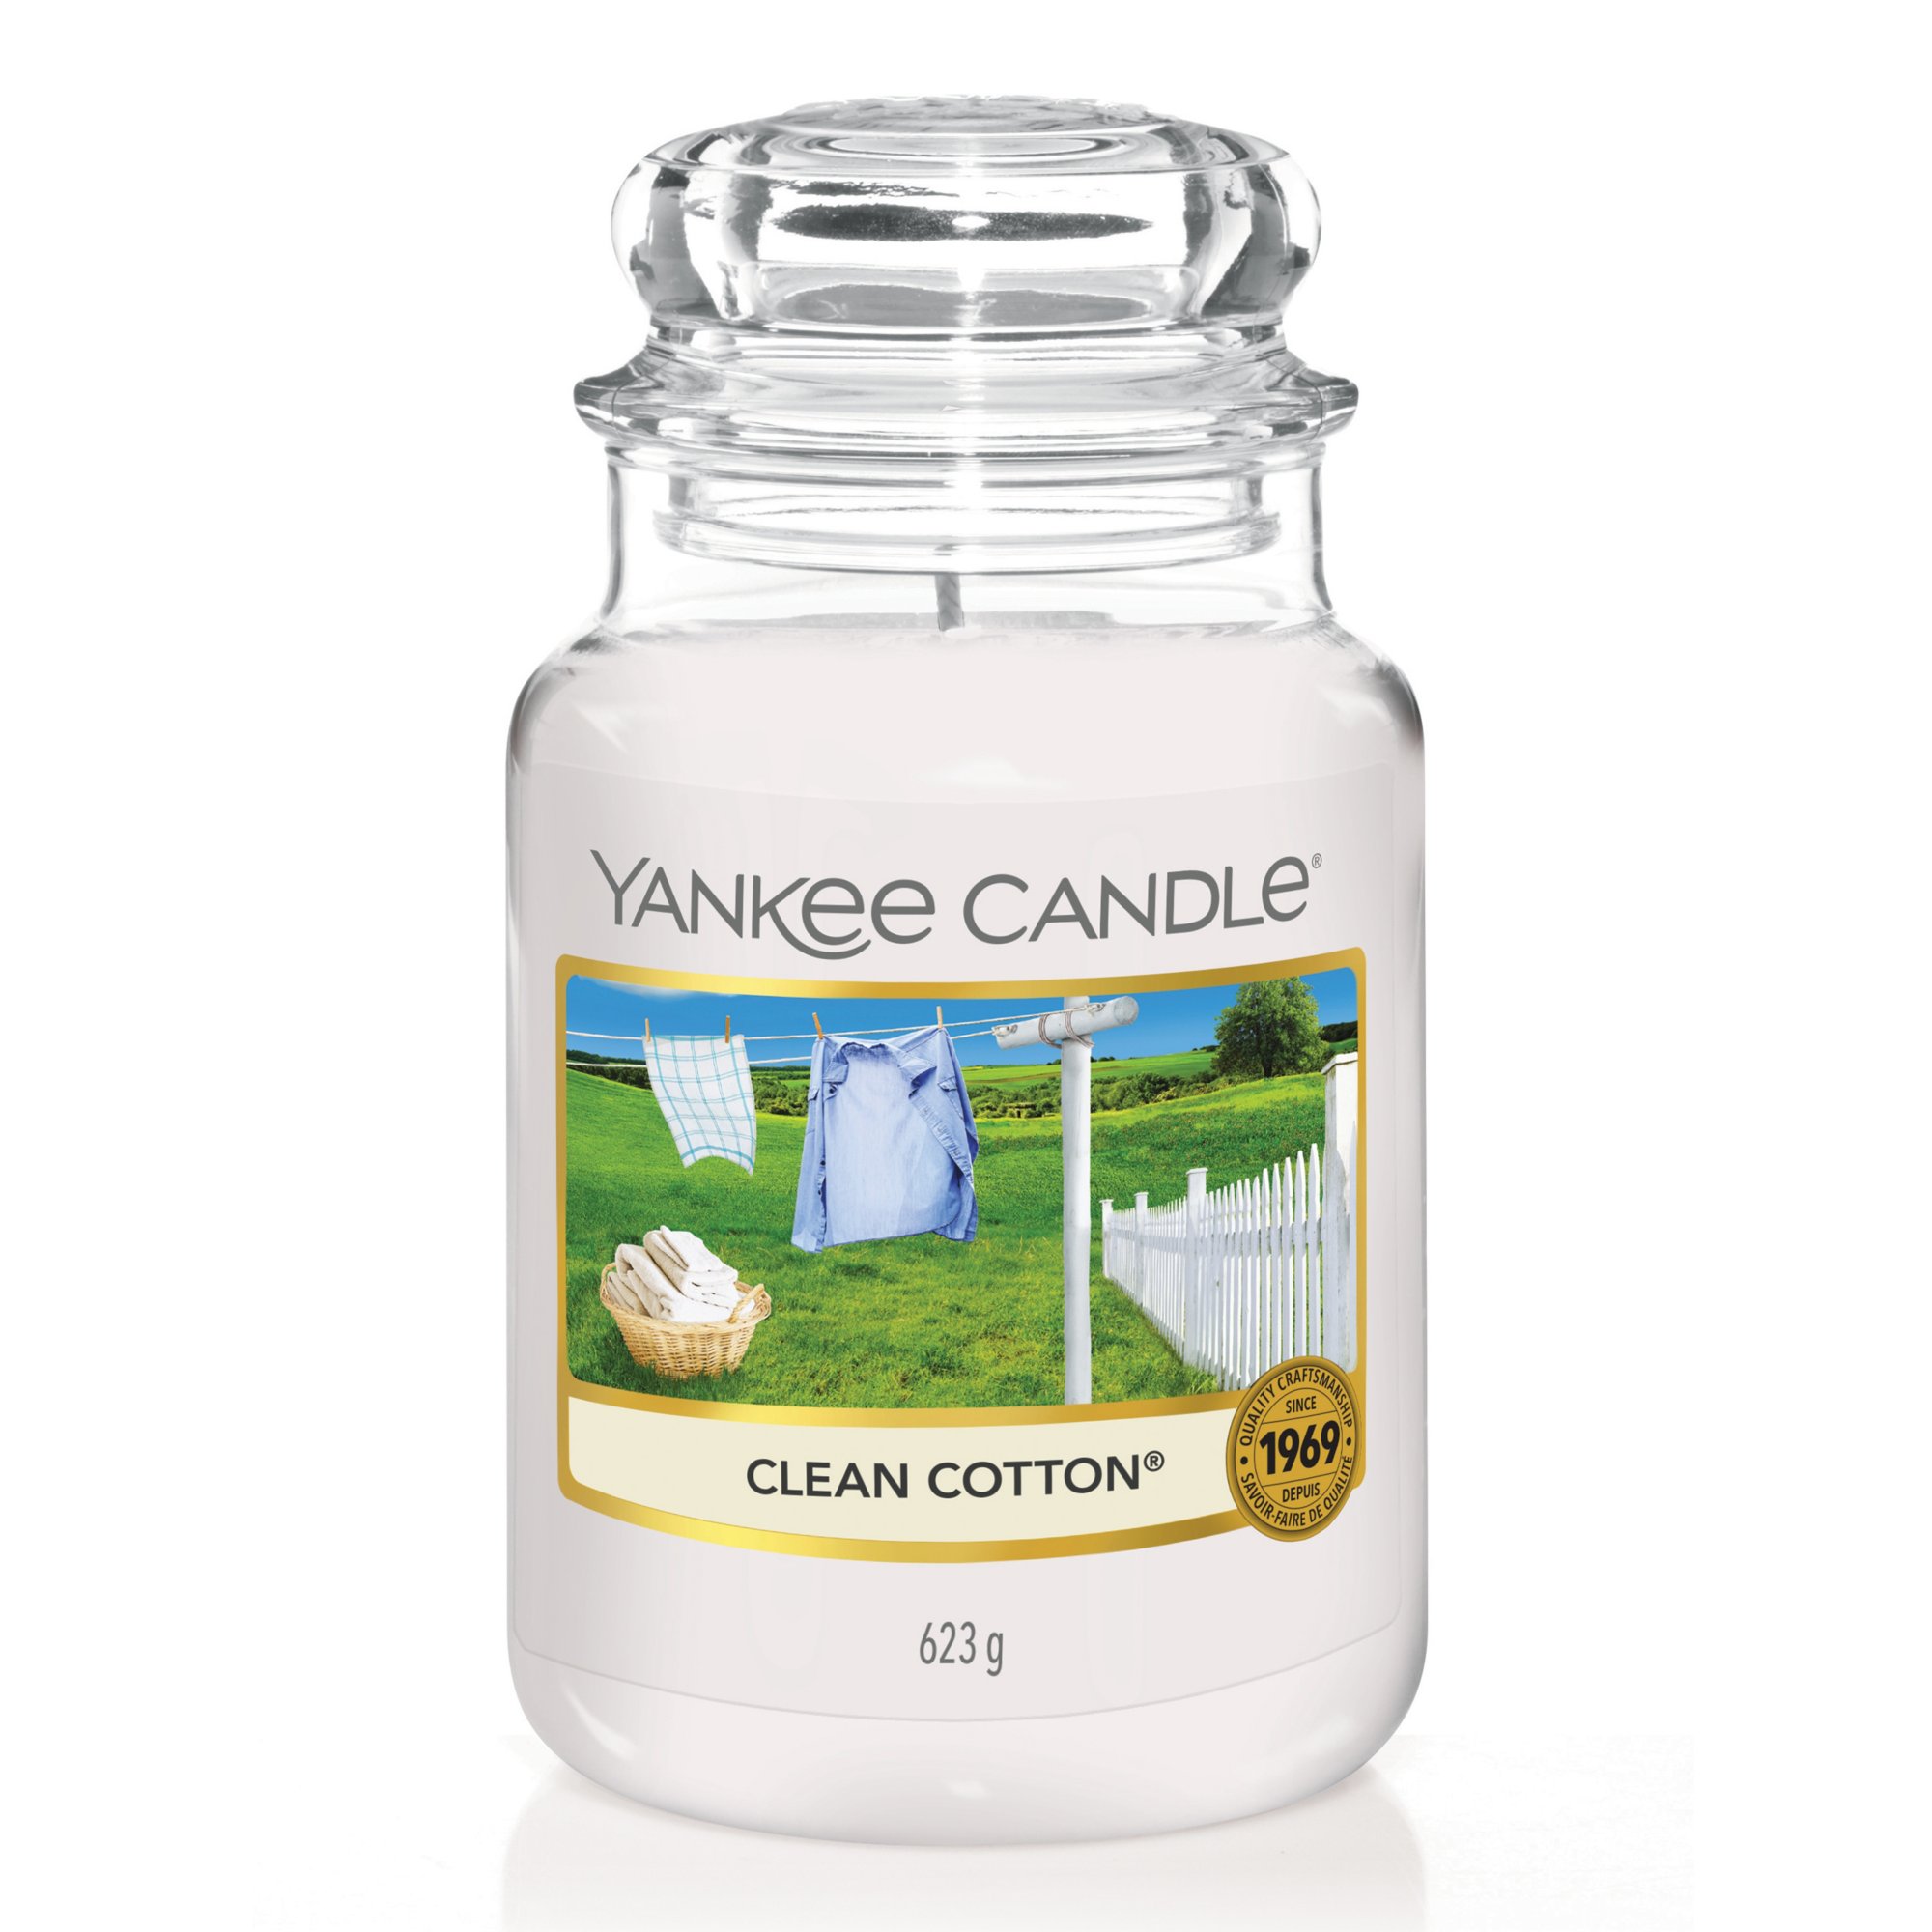 Clean Cotton small Jar (klein/petite)  Yankee Candle Offizielle Website  Schweiz